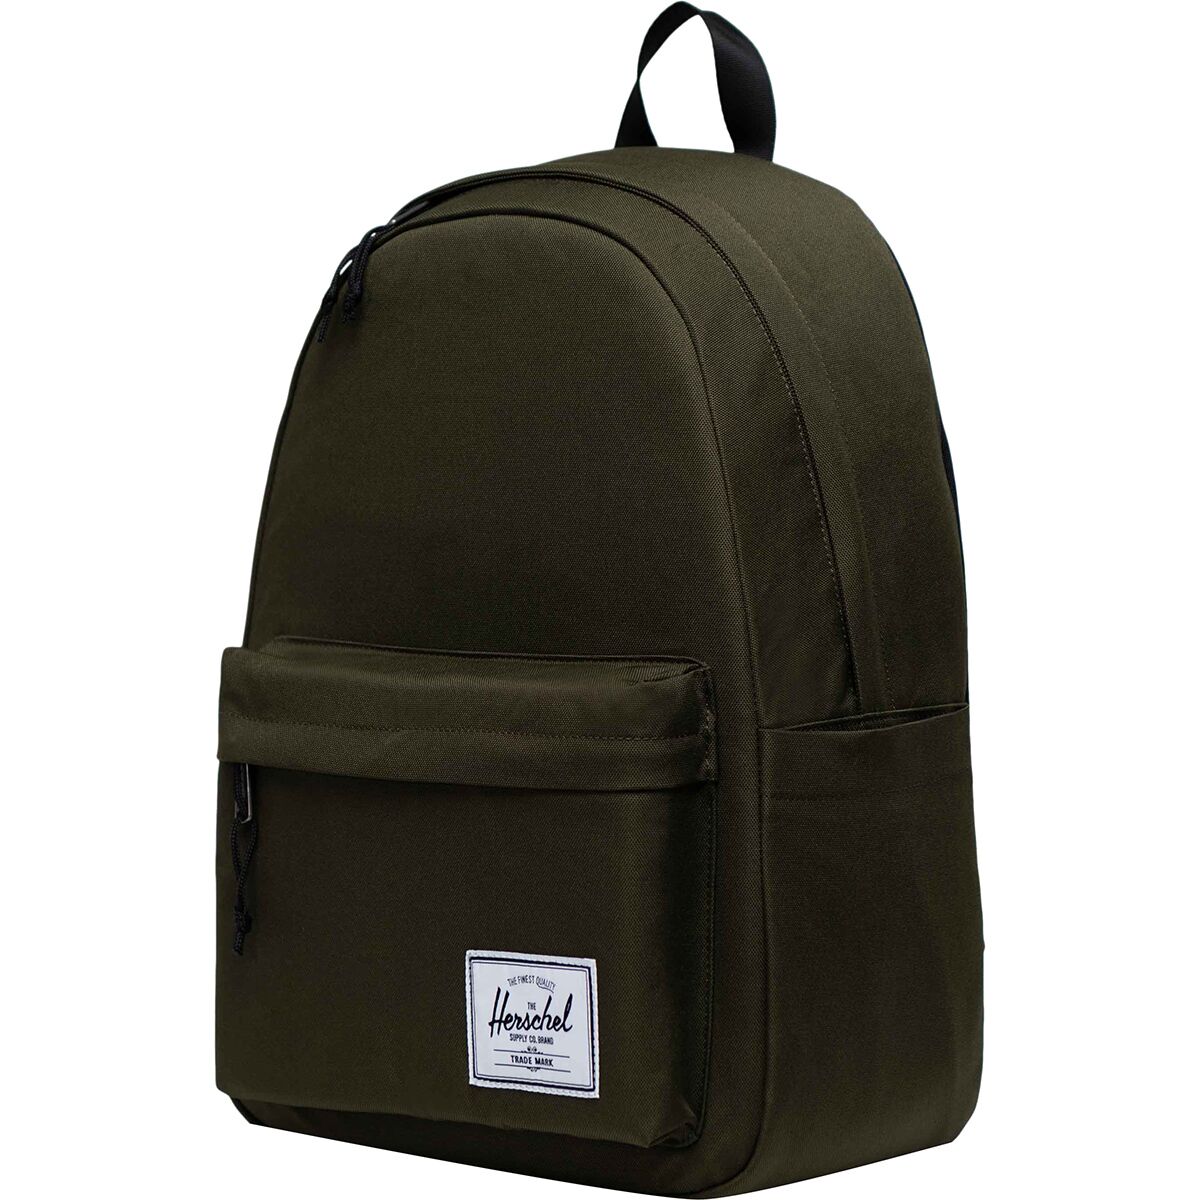 Классический рюкзак xl 26 л Herschel Supply, зеленый рюкзак herschel classic xl 10492 grey black 30 l